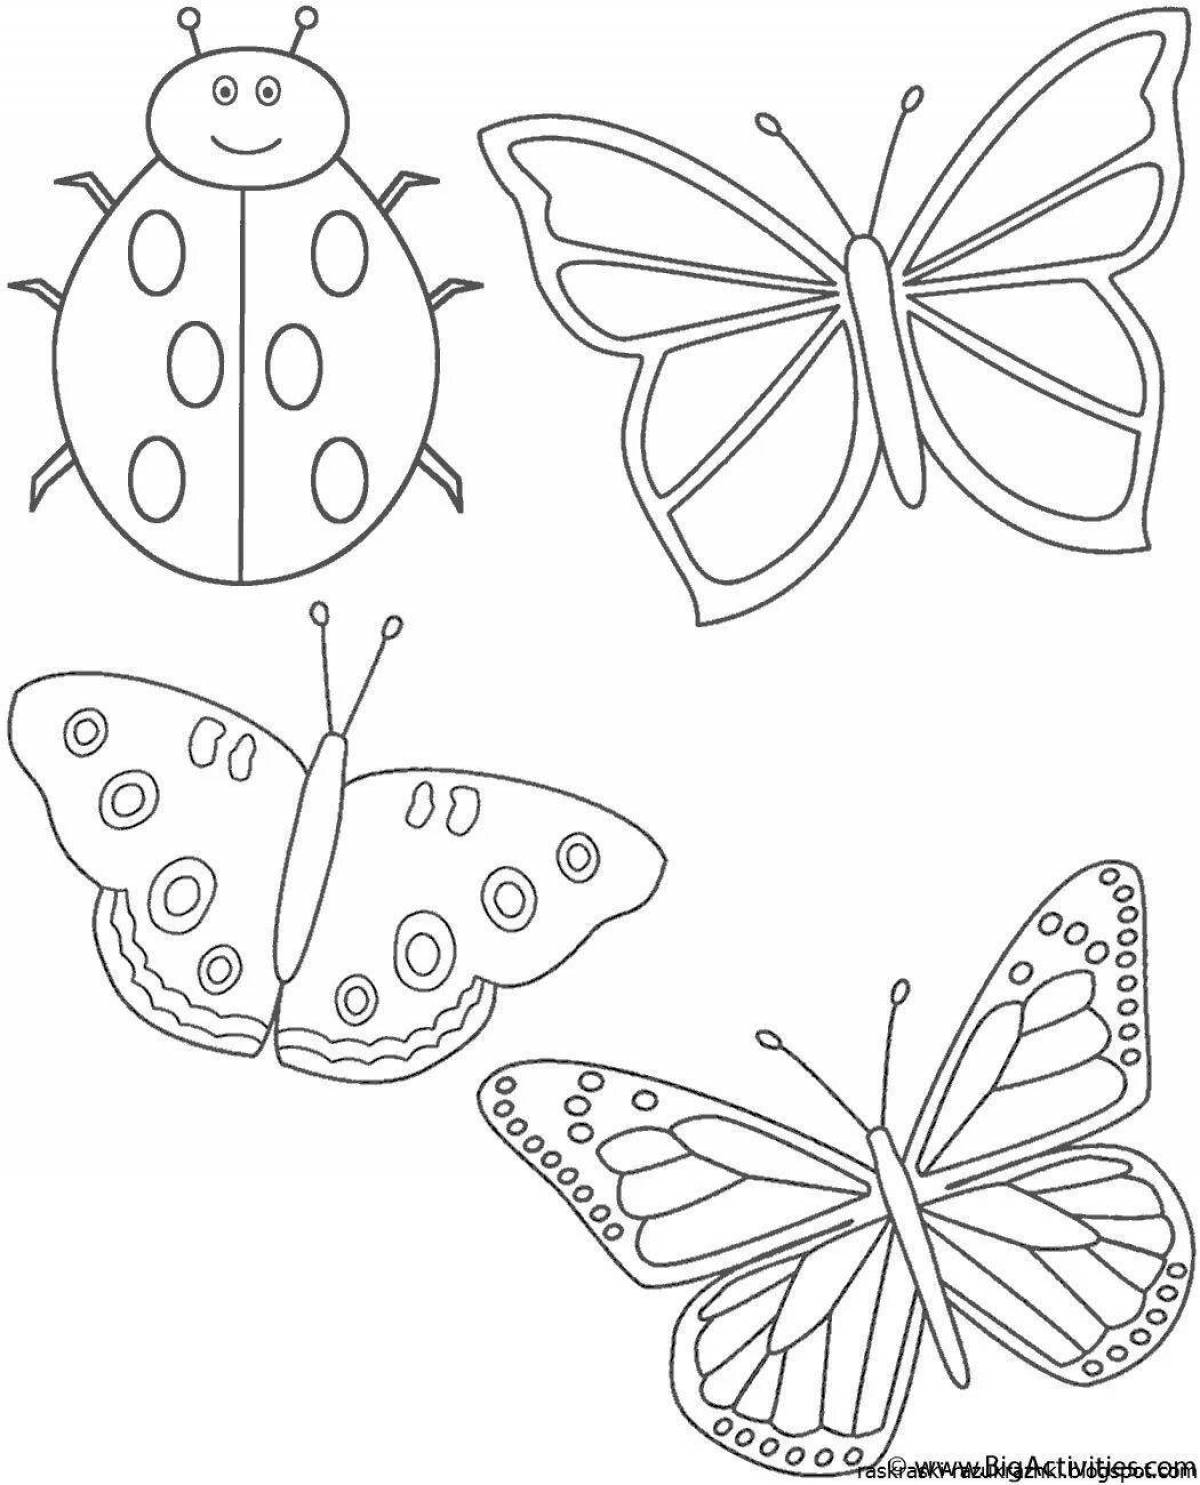 Раскраска насекомое ребенку 4 года. Рисунки для раскрашивания. Бабочка раскраска для детей. Раскраска для малы бабочка. Насекомые. Раскраска.